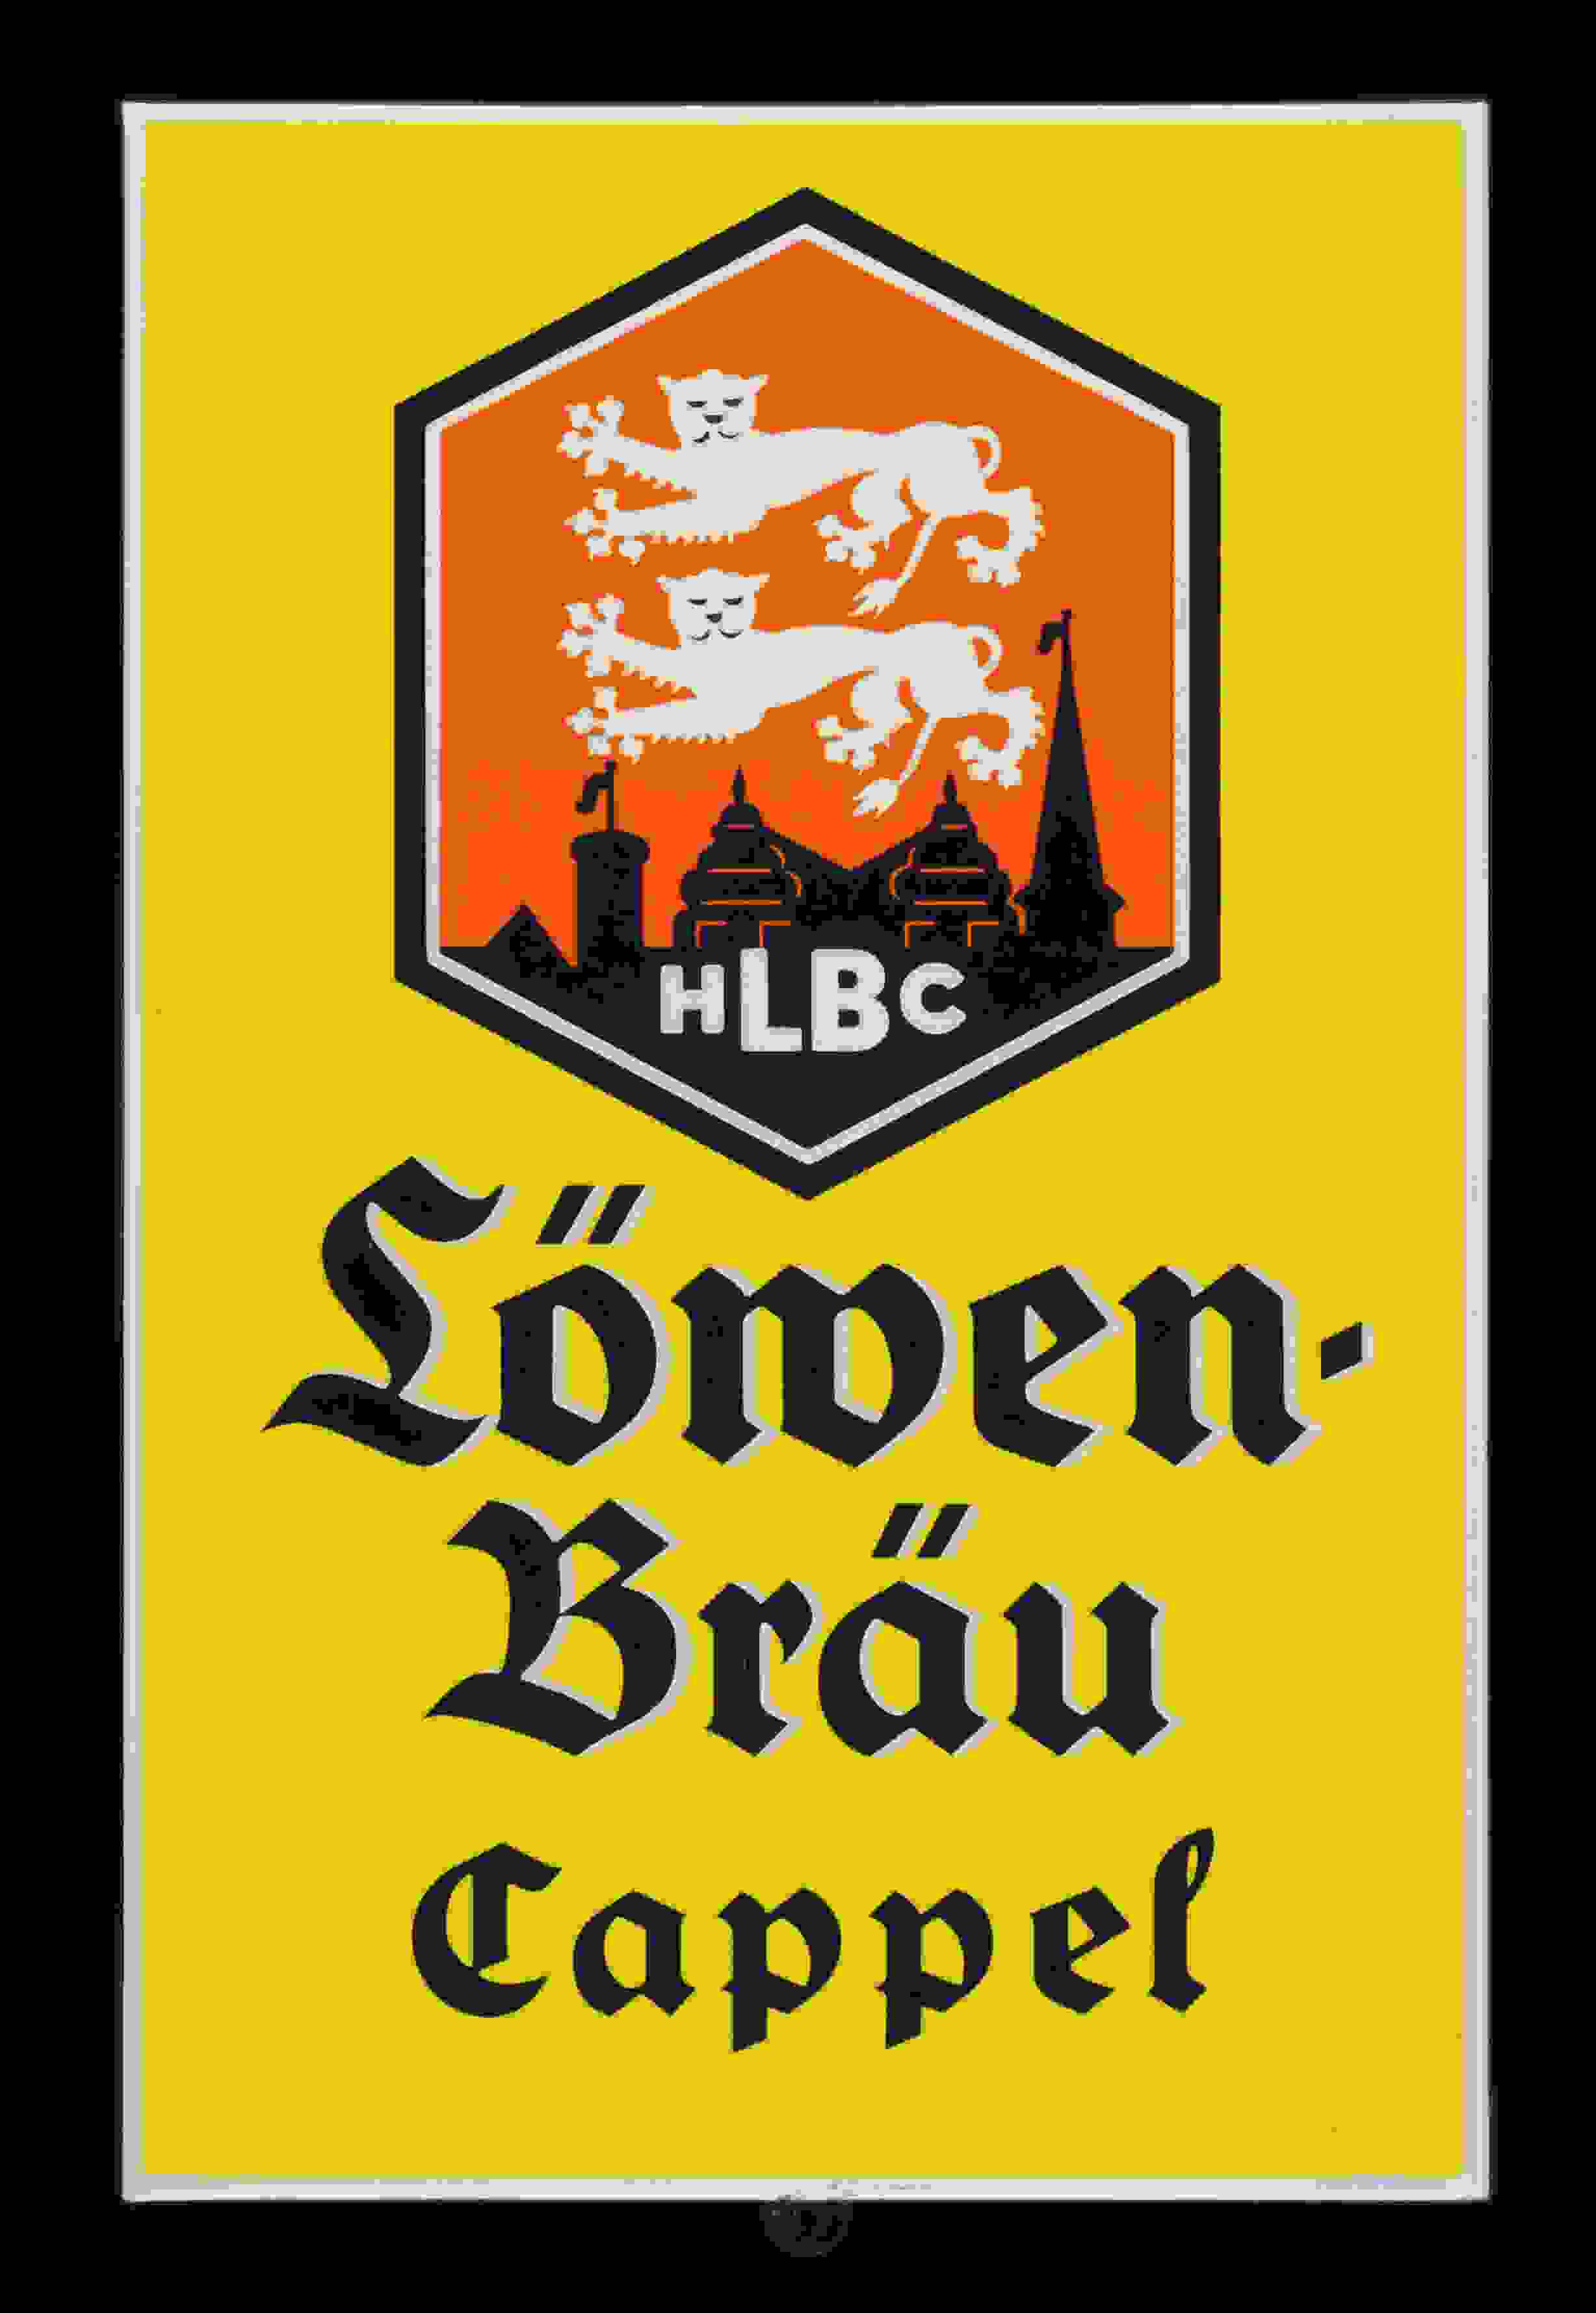 Löwen-Bräu Cappel HLBC 